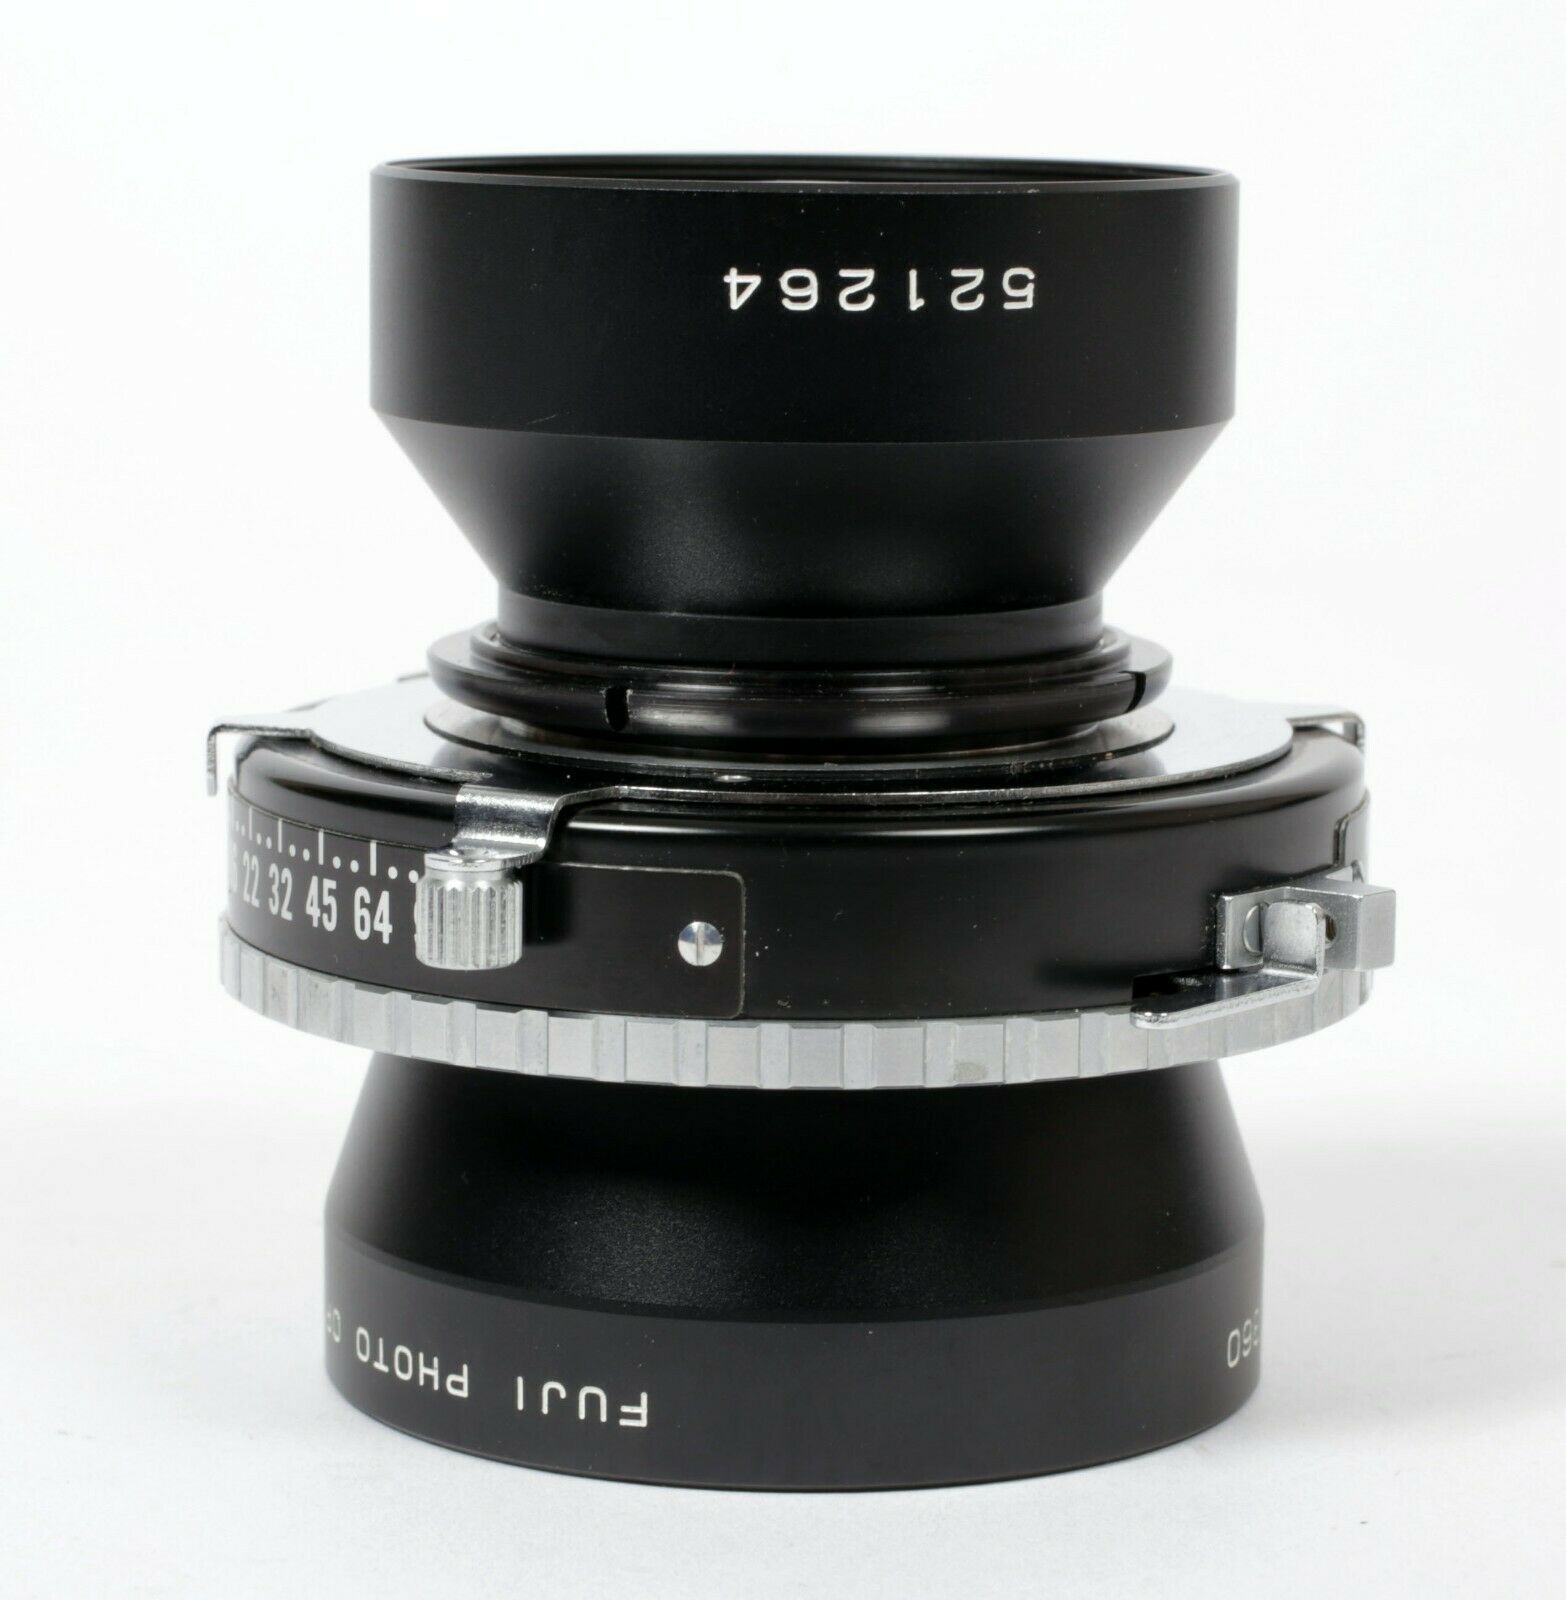 Fuji EBC A 360mm F10 Lens in Copal #1 Shutter (Covers 11X14) #264